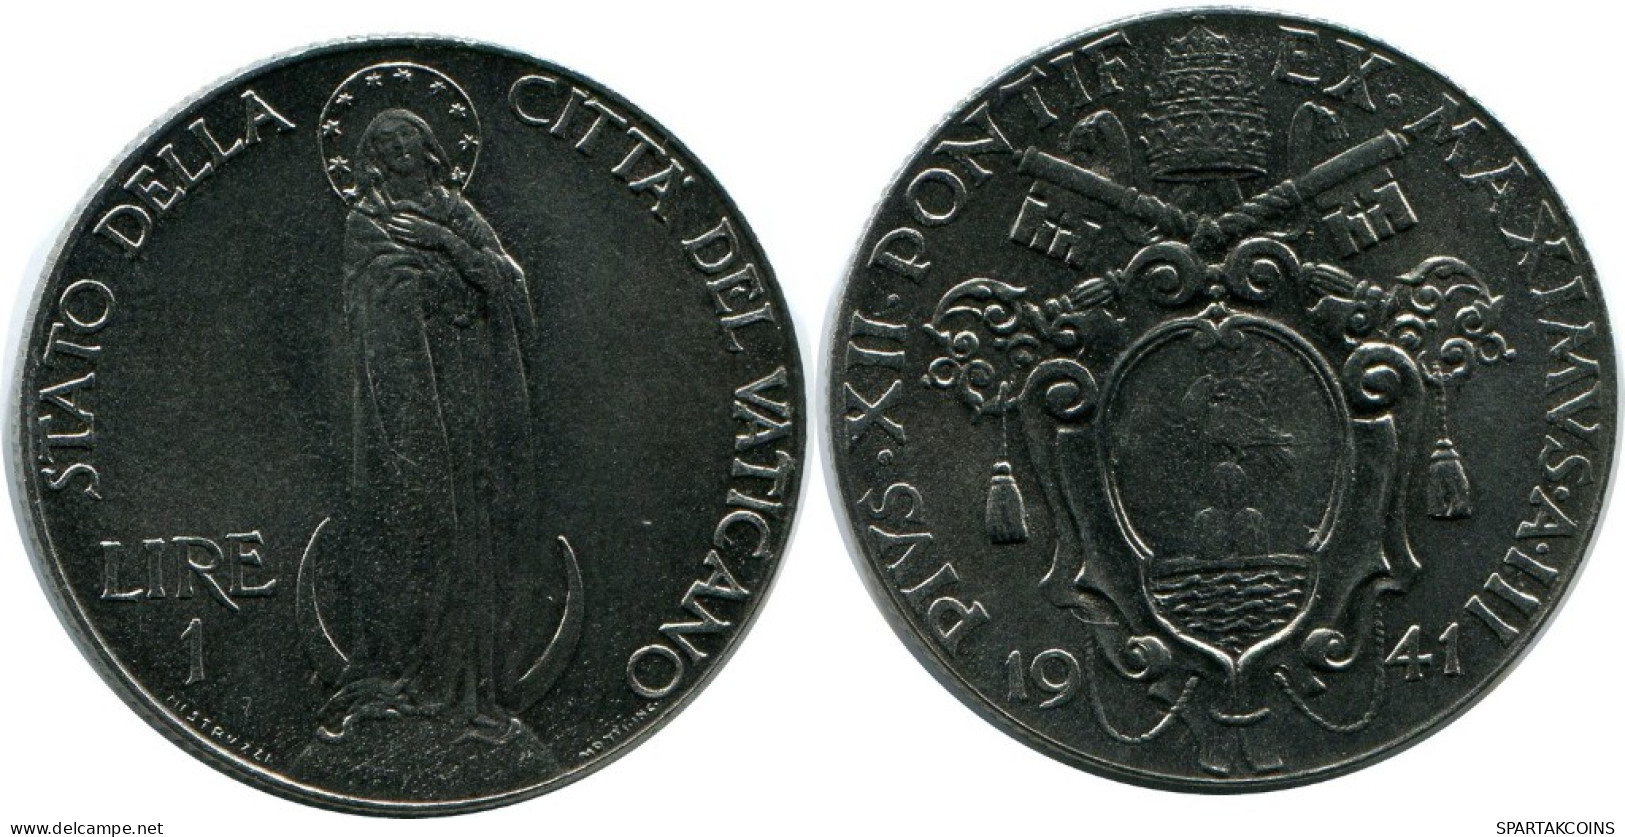 1 LIRE 1941 VATICAN Coin Pius XII (1939-1958) #AH314.16.U.A - Vatikan